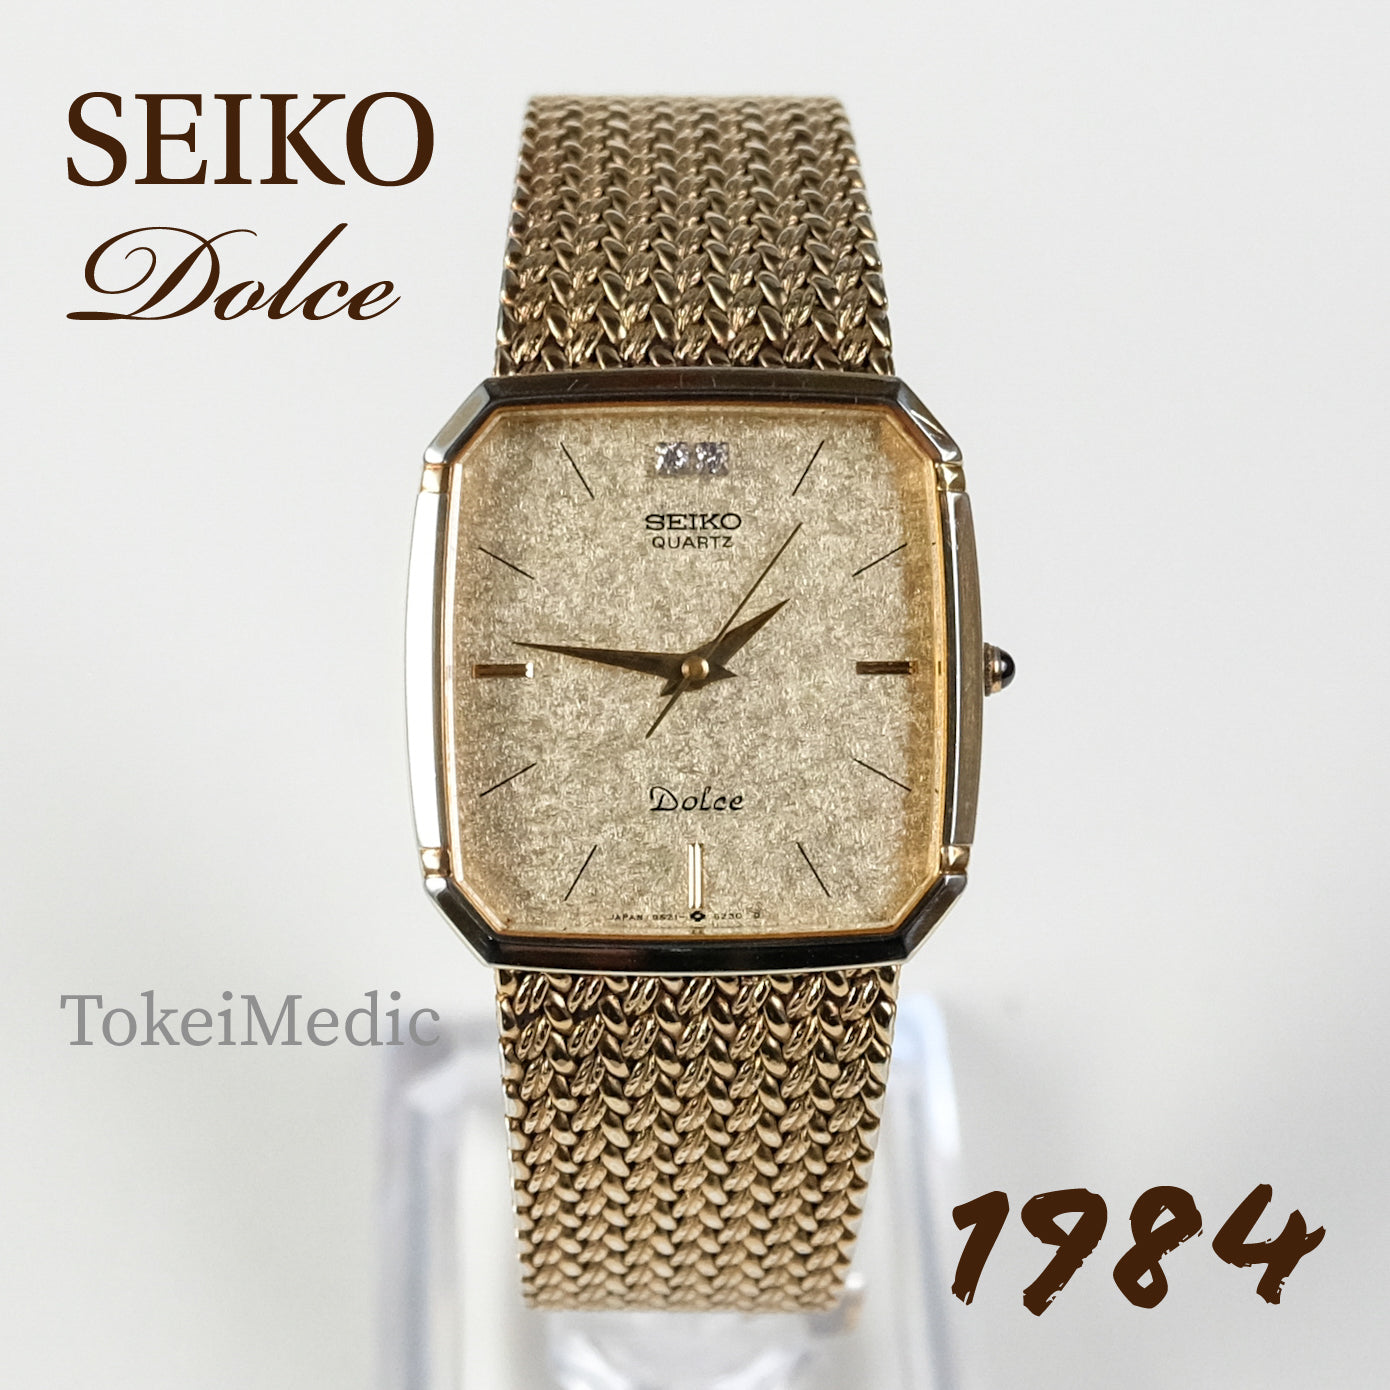 1984 Seiko Dolce 9521-5210